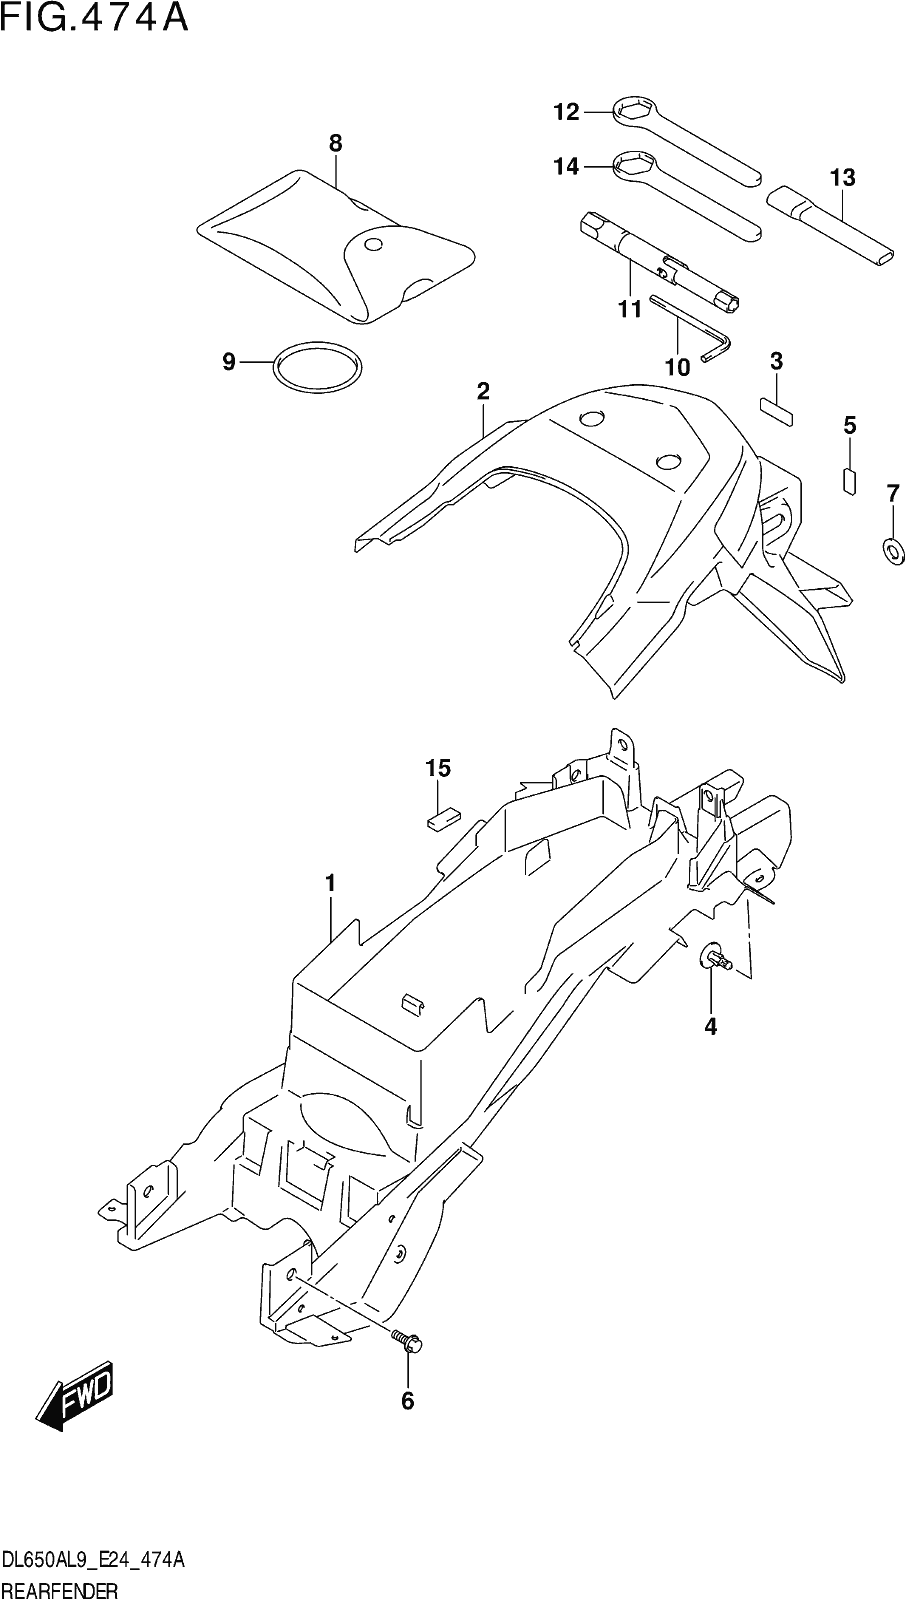 Fig.474a Rear Fender